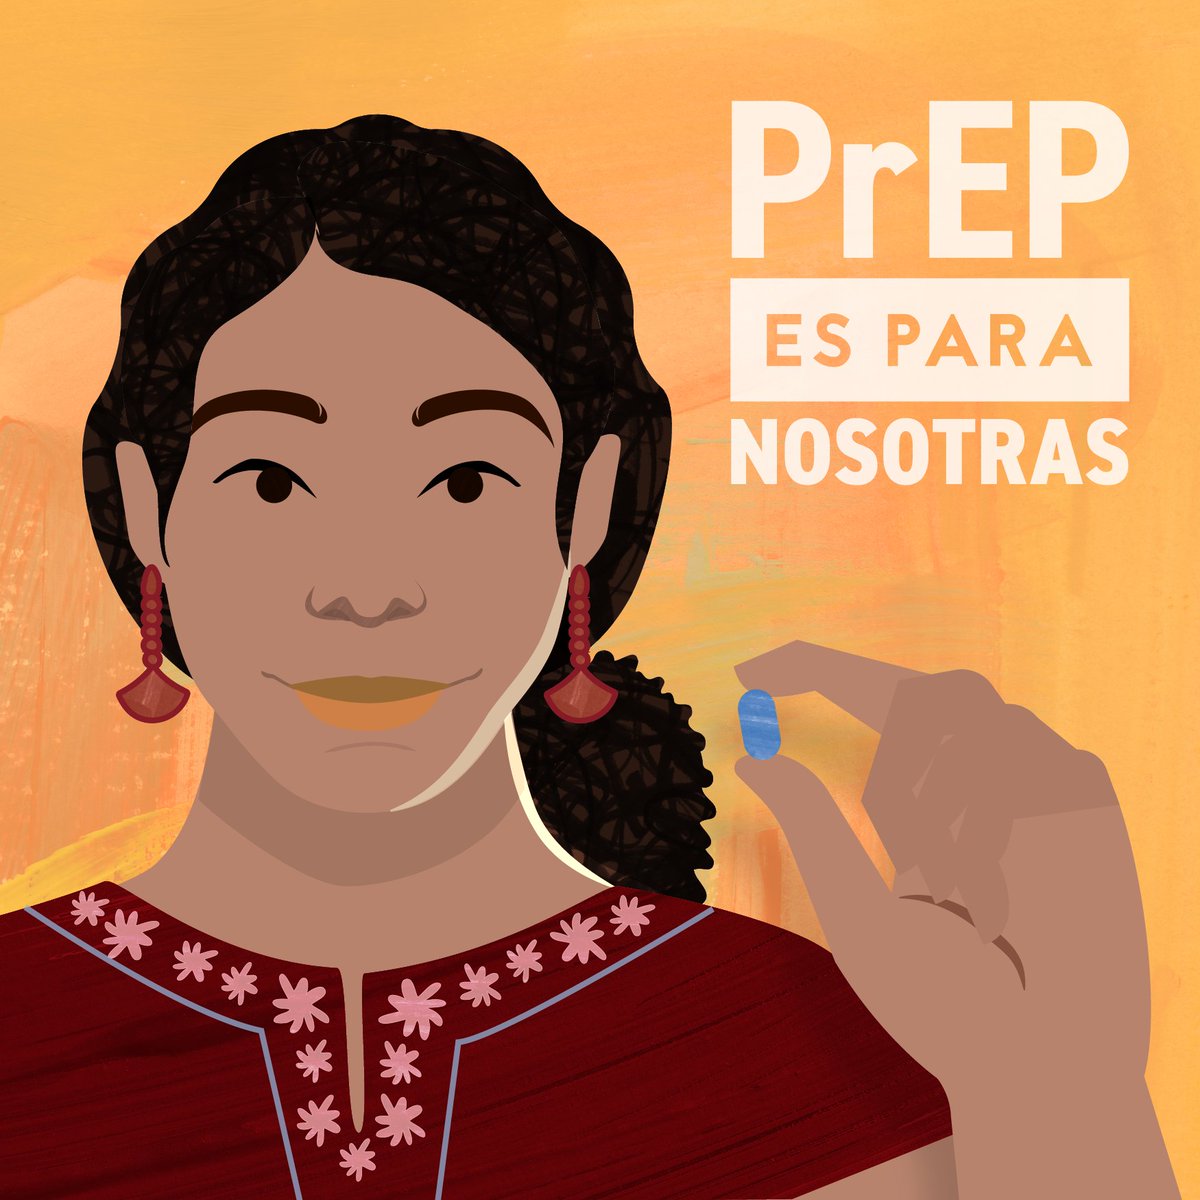 PrEP puede ser parte de tu rutina de salud. Aprende sobre los beneficios de #PrEP para mujeres: cdc.gov/Juntos/SanasYP…

#DetengamosJuntosElVIH